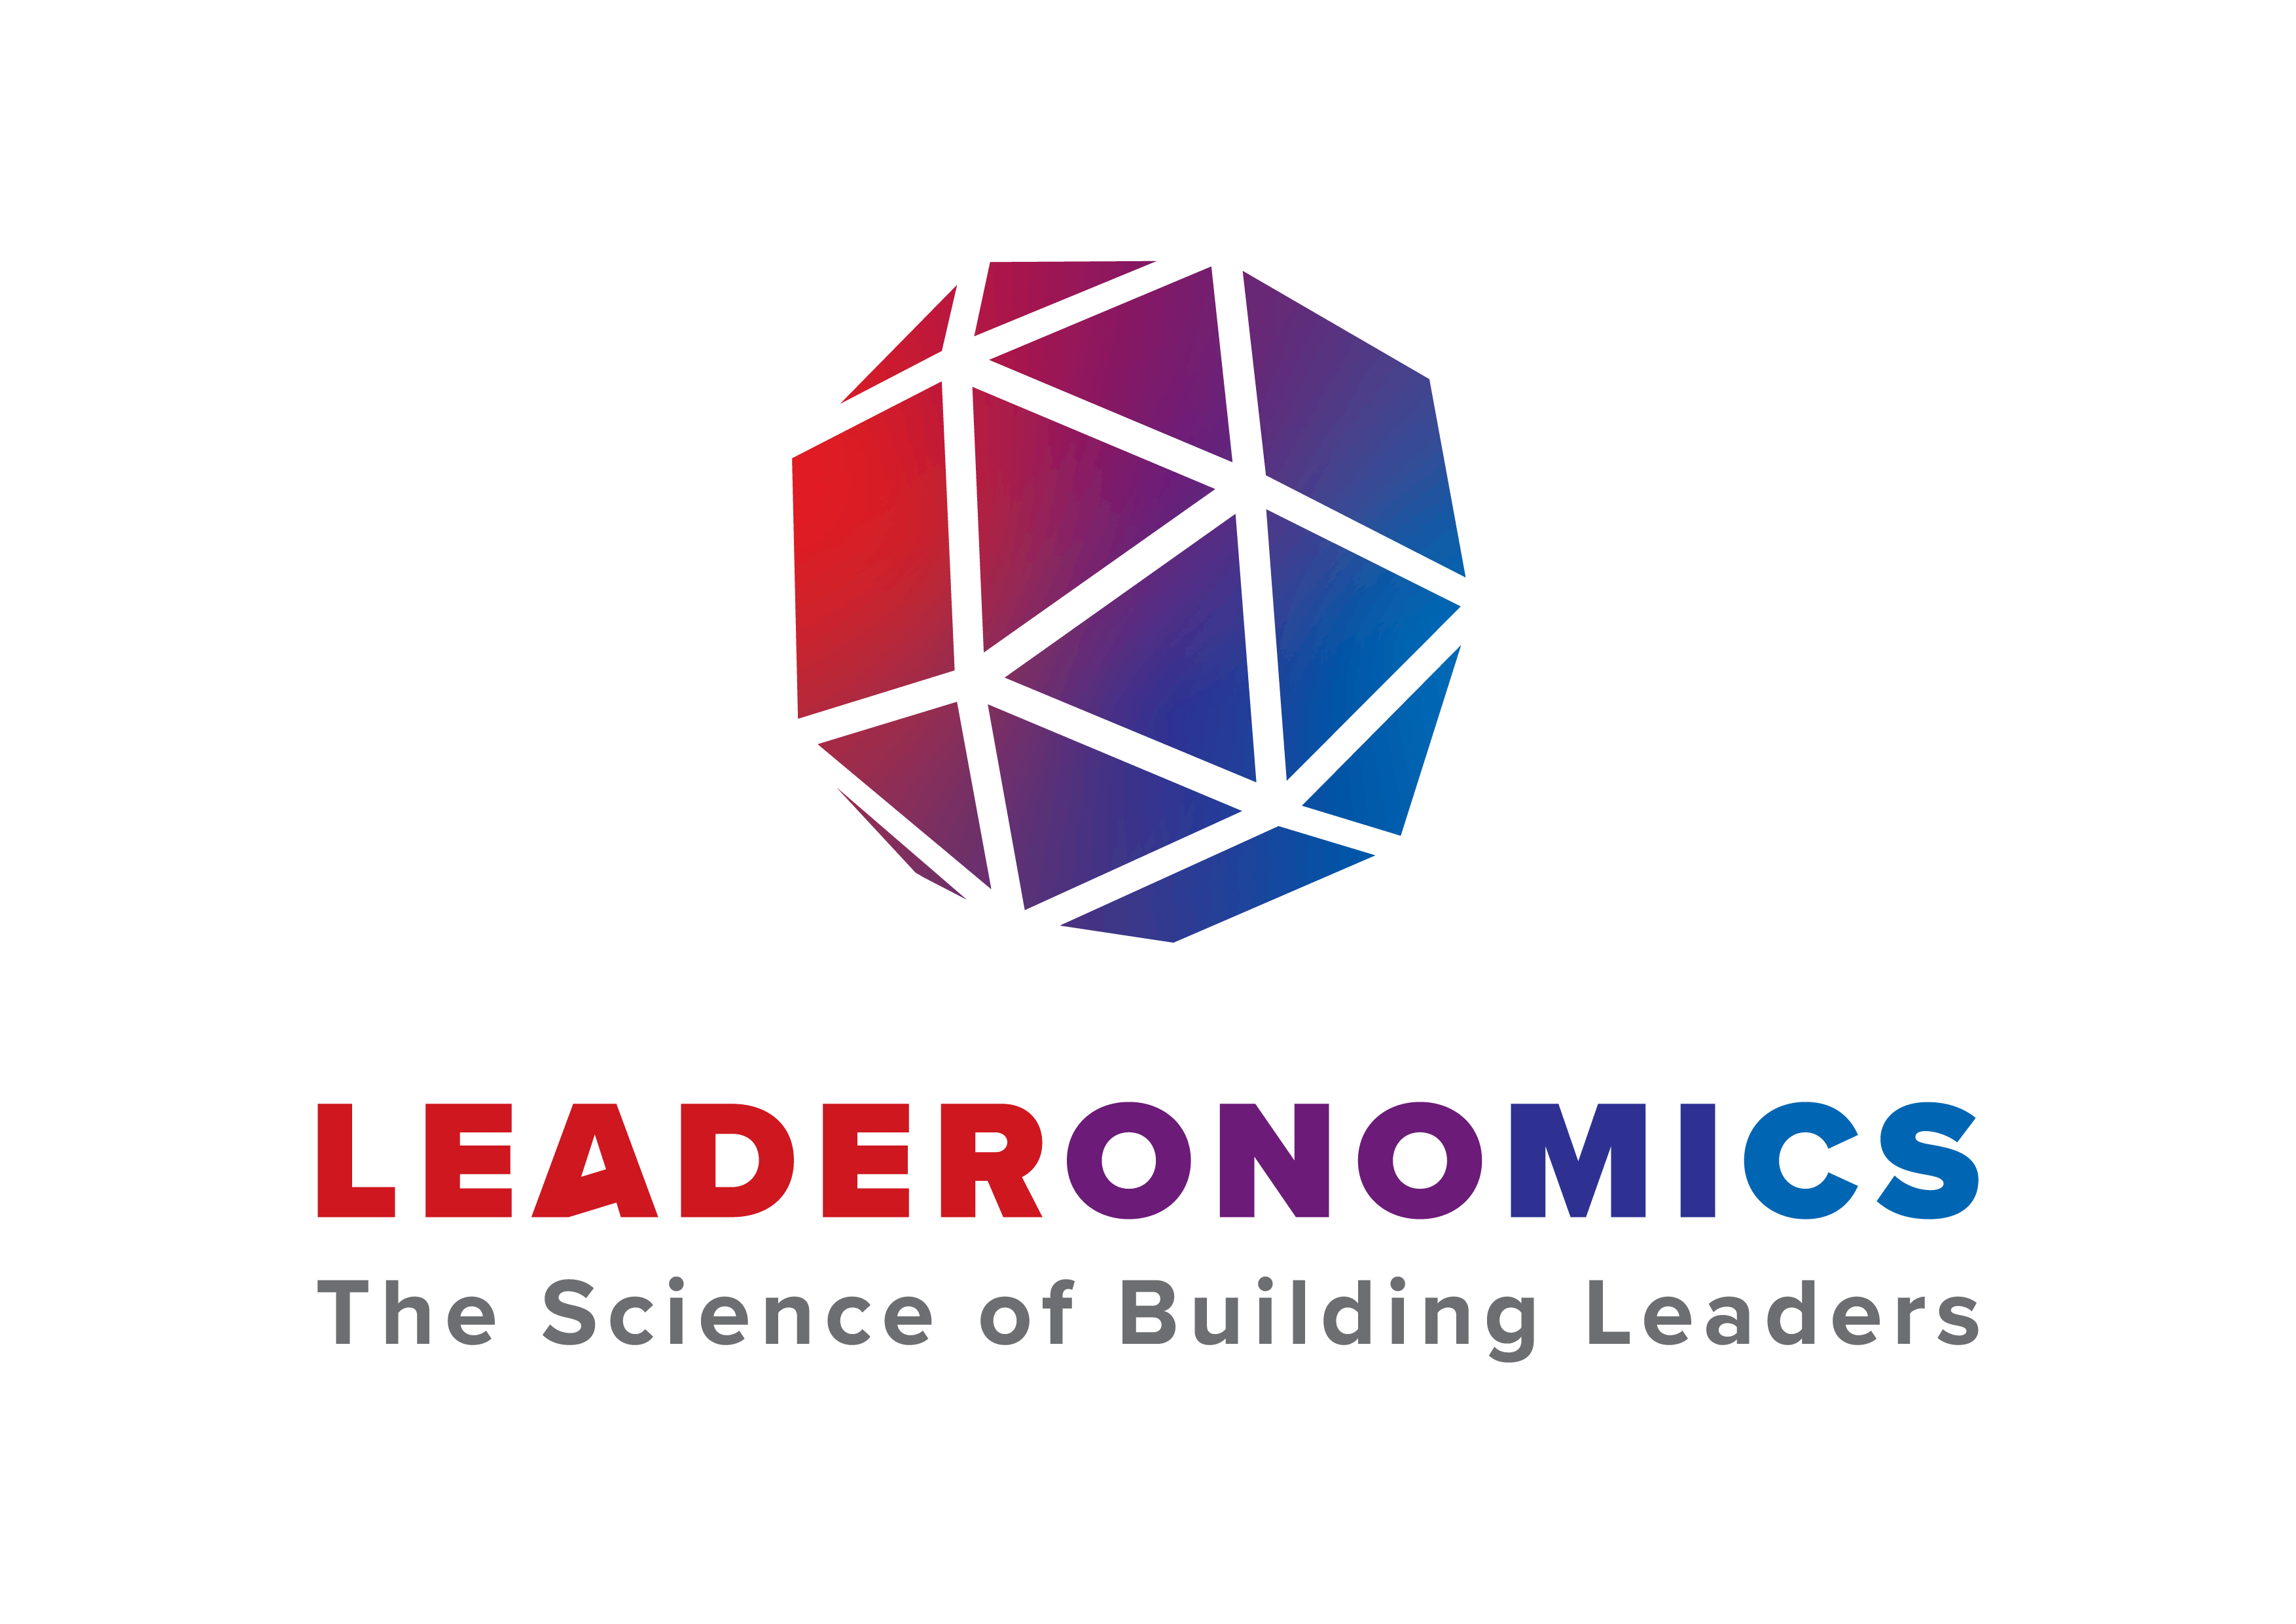 Leaderonomics